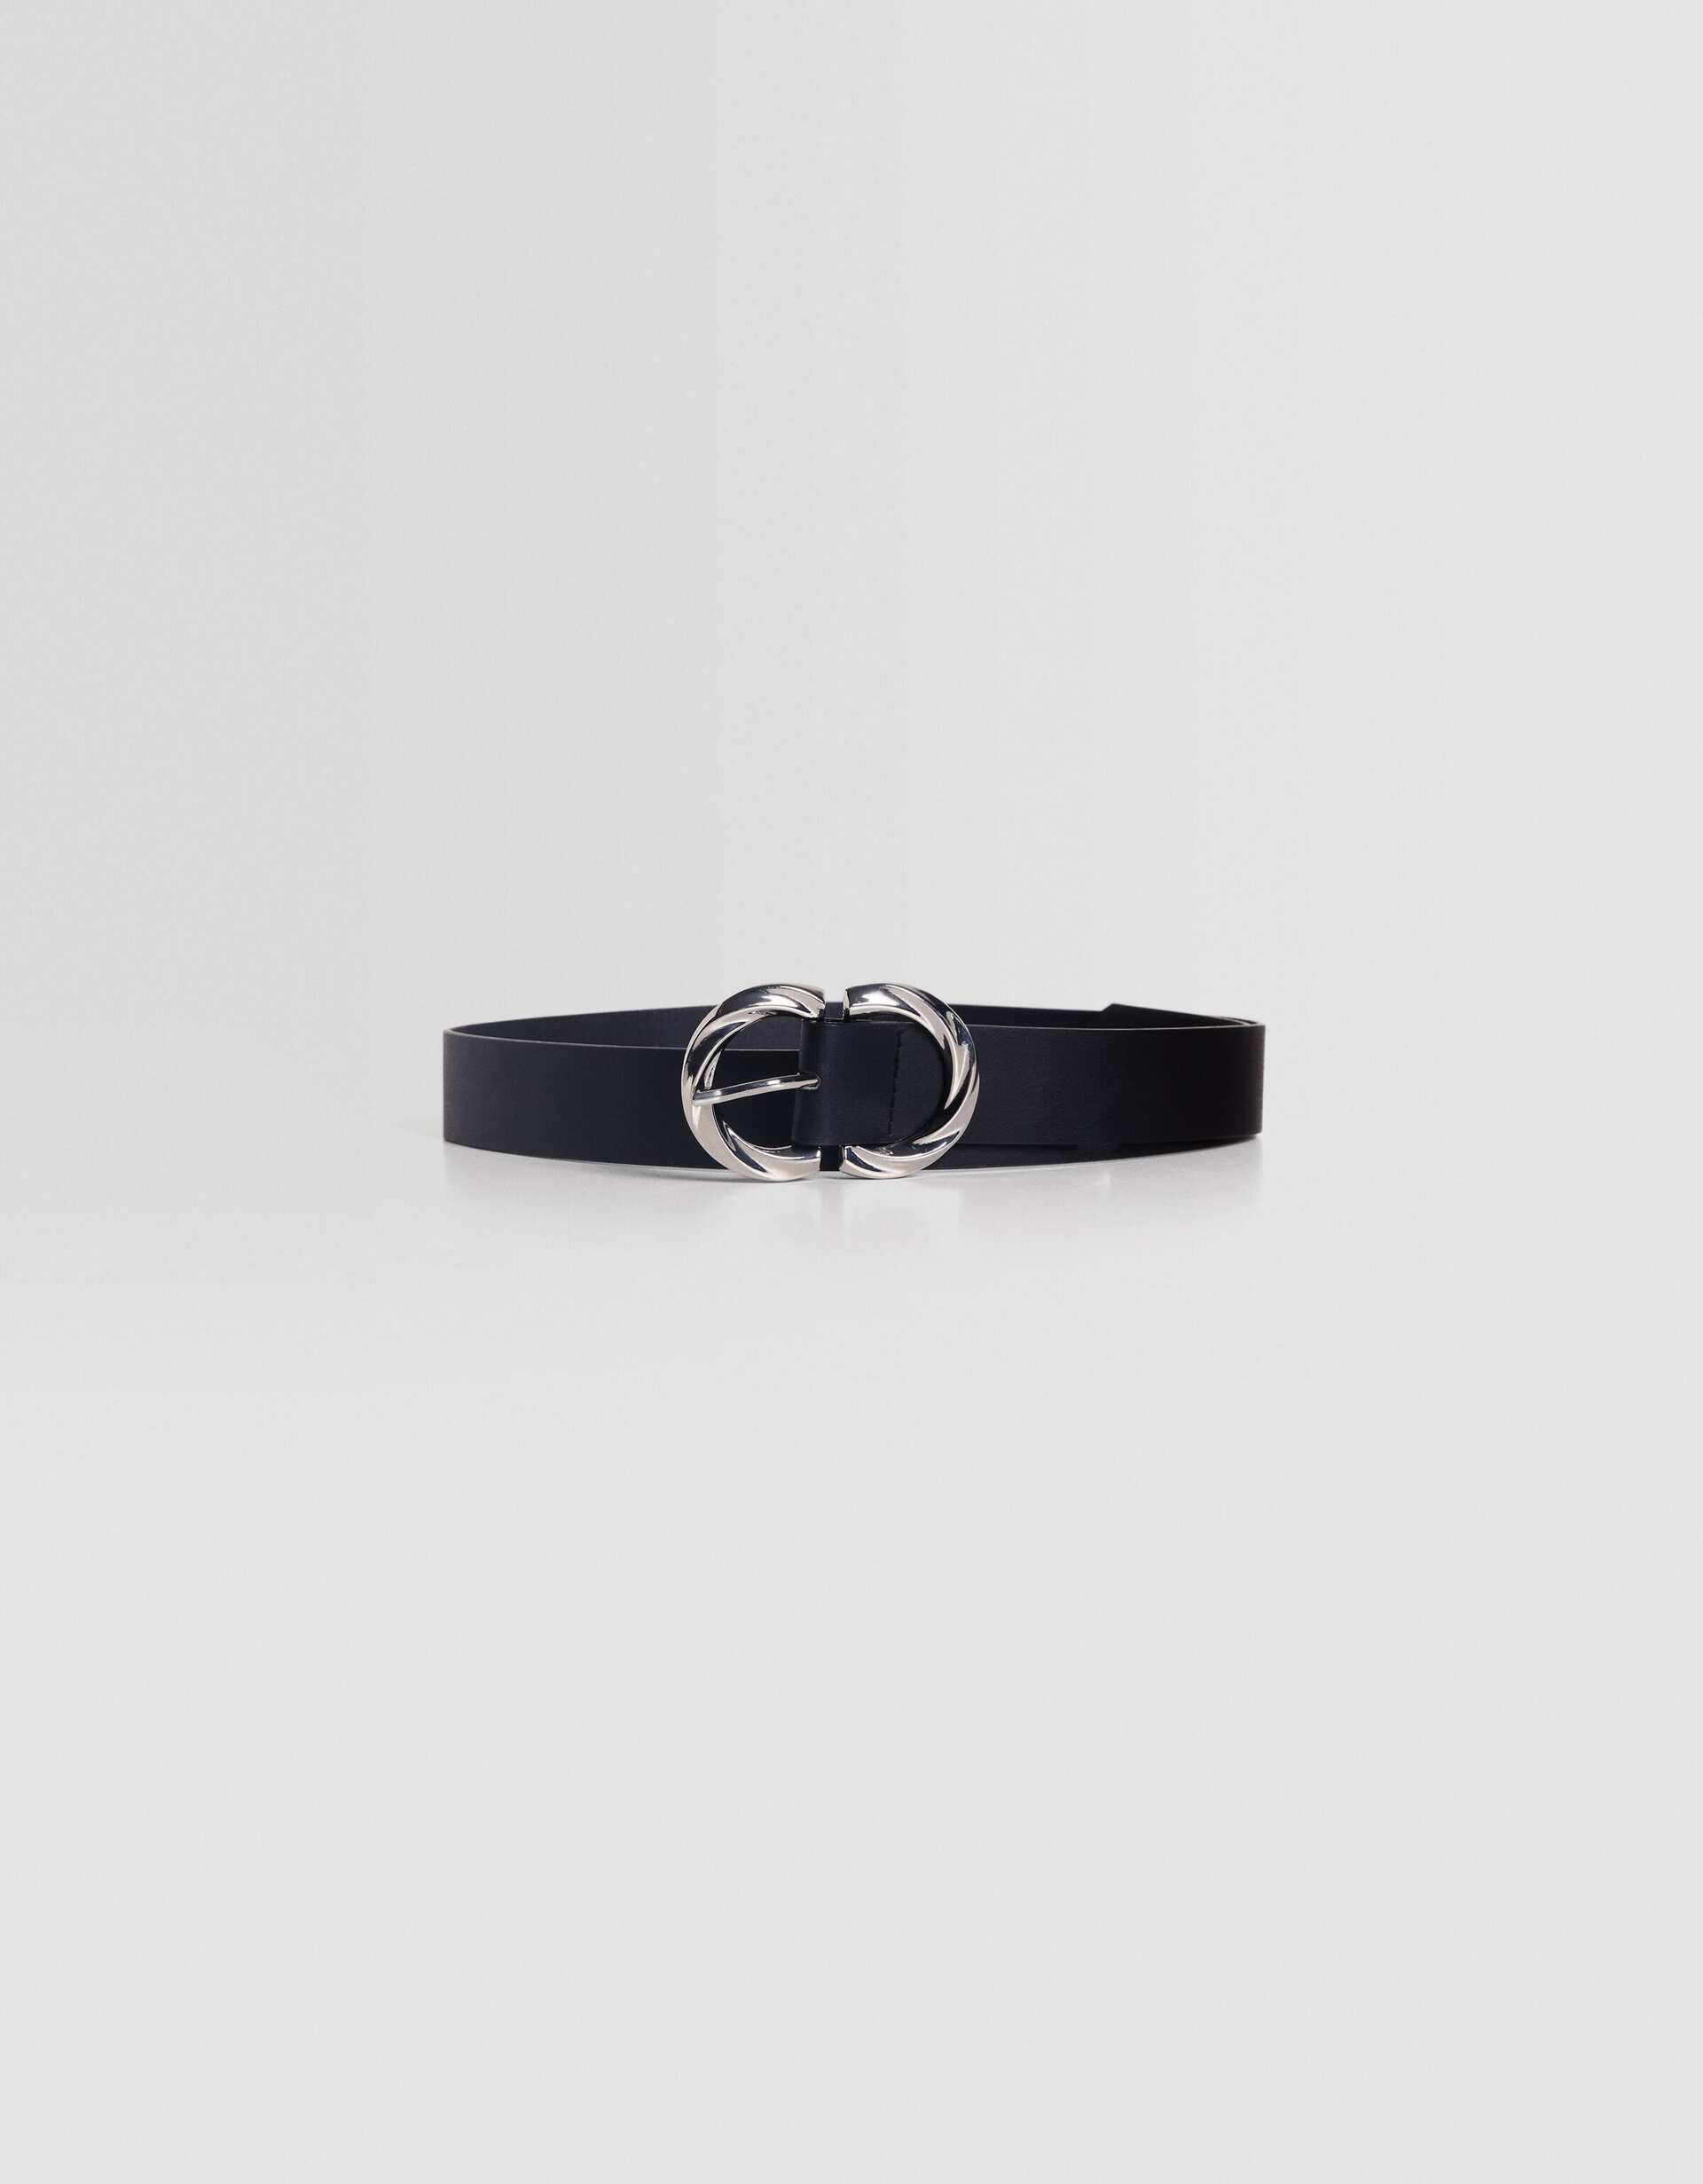 Designer Belts For Women, Leather Belts